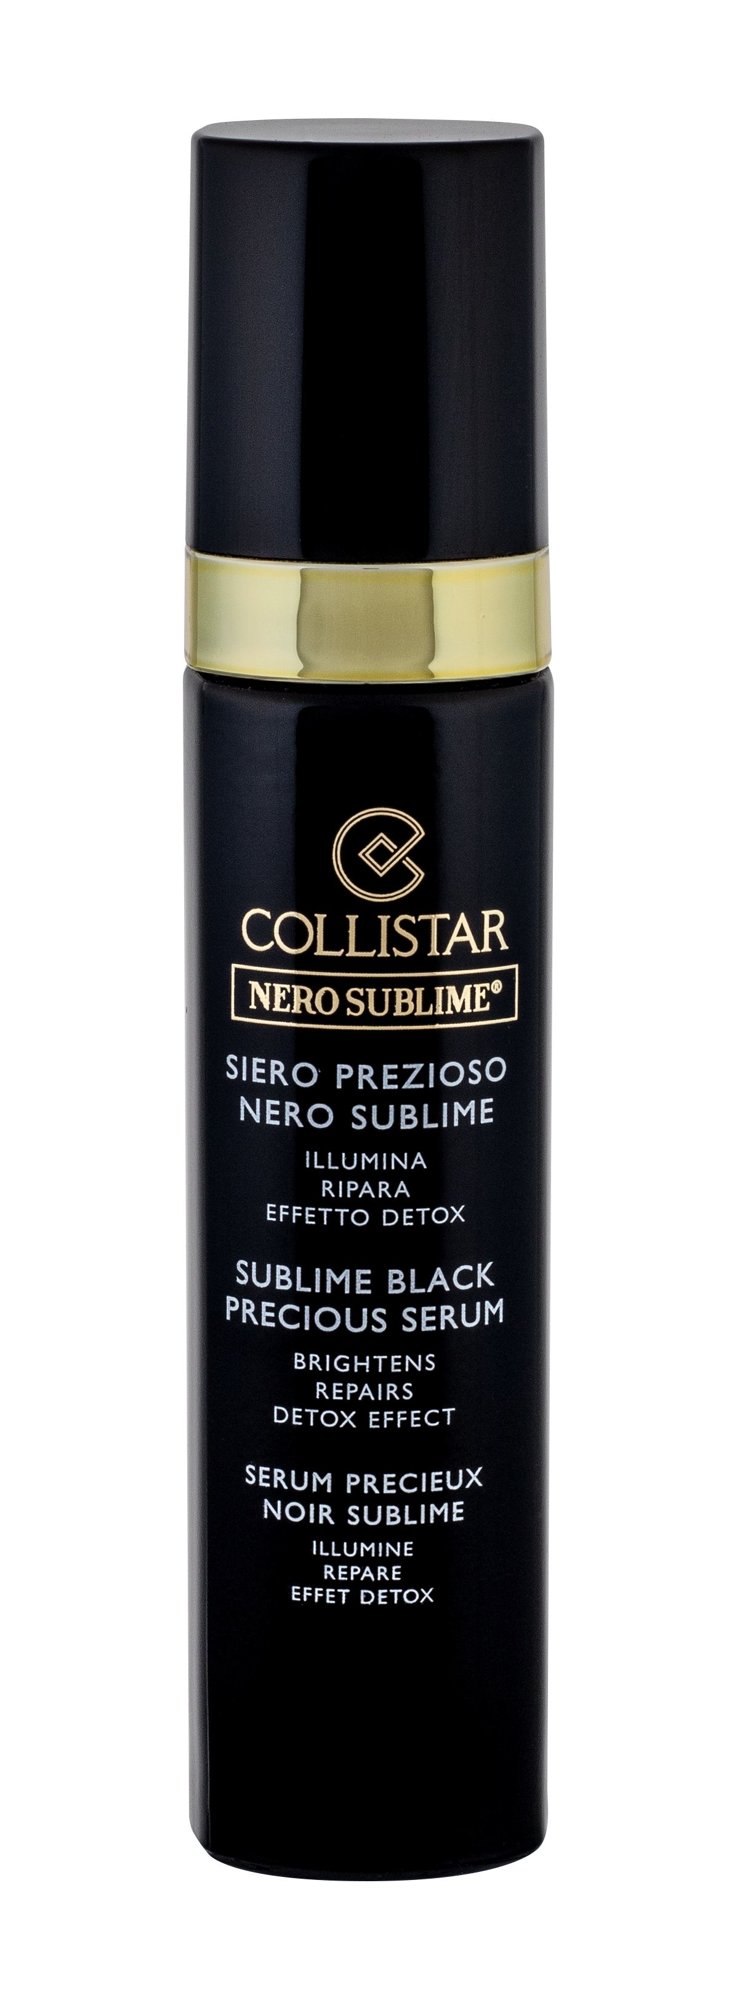 Collistar Nero Sublime Sublime Black Precious Serum 30ml Veido serumas